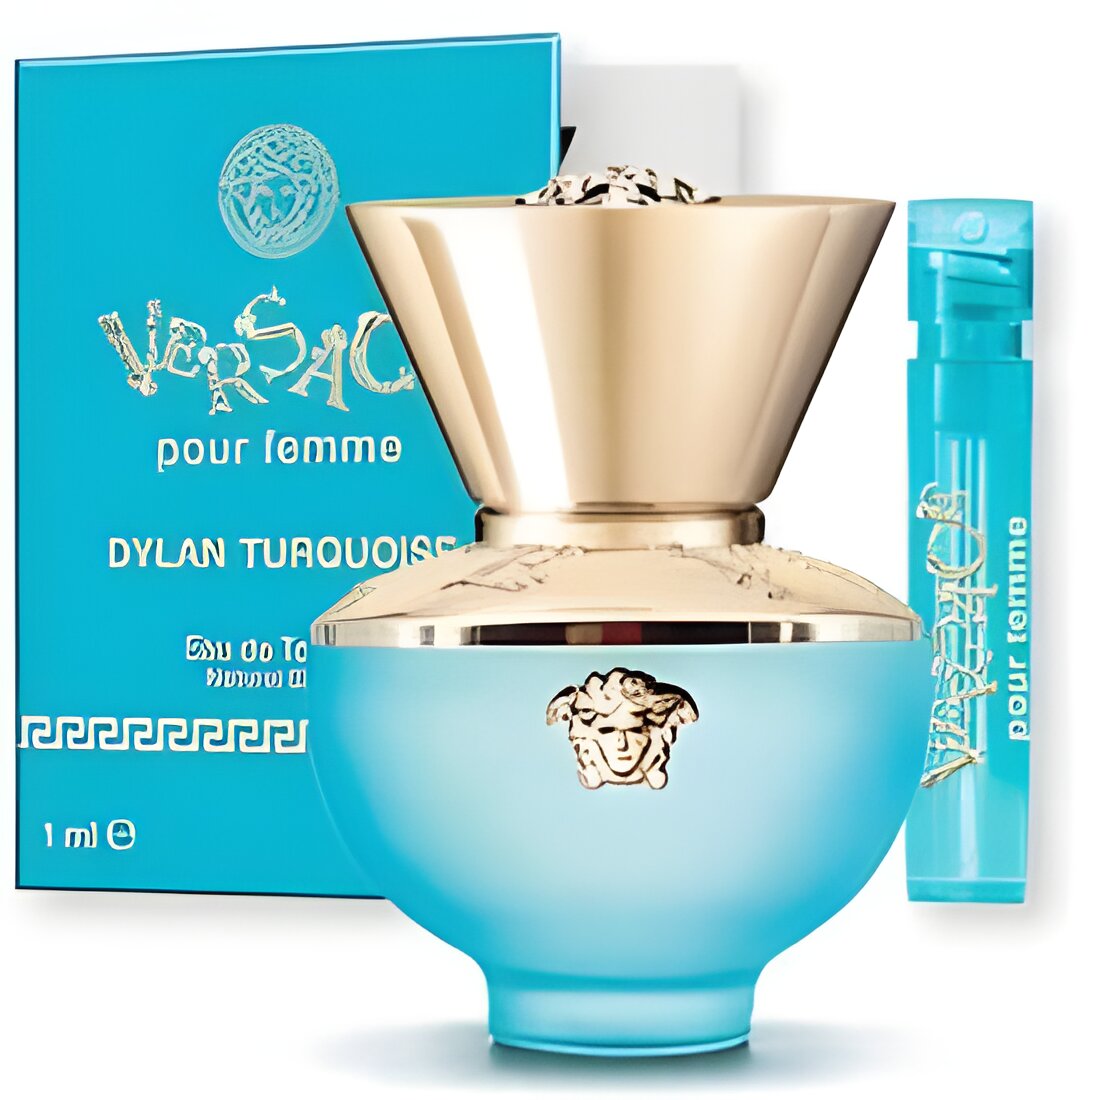 Free Versace Dylan Turquoise Eau de Toilette Sample